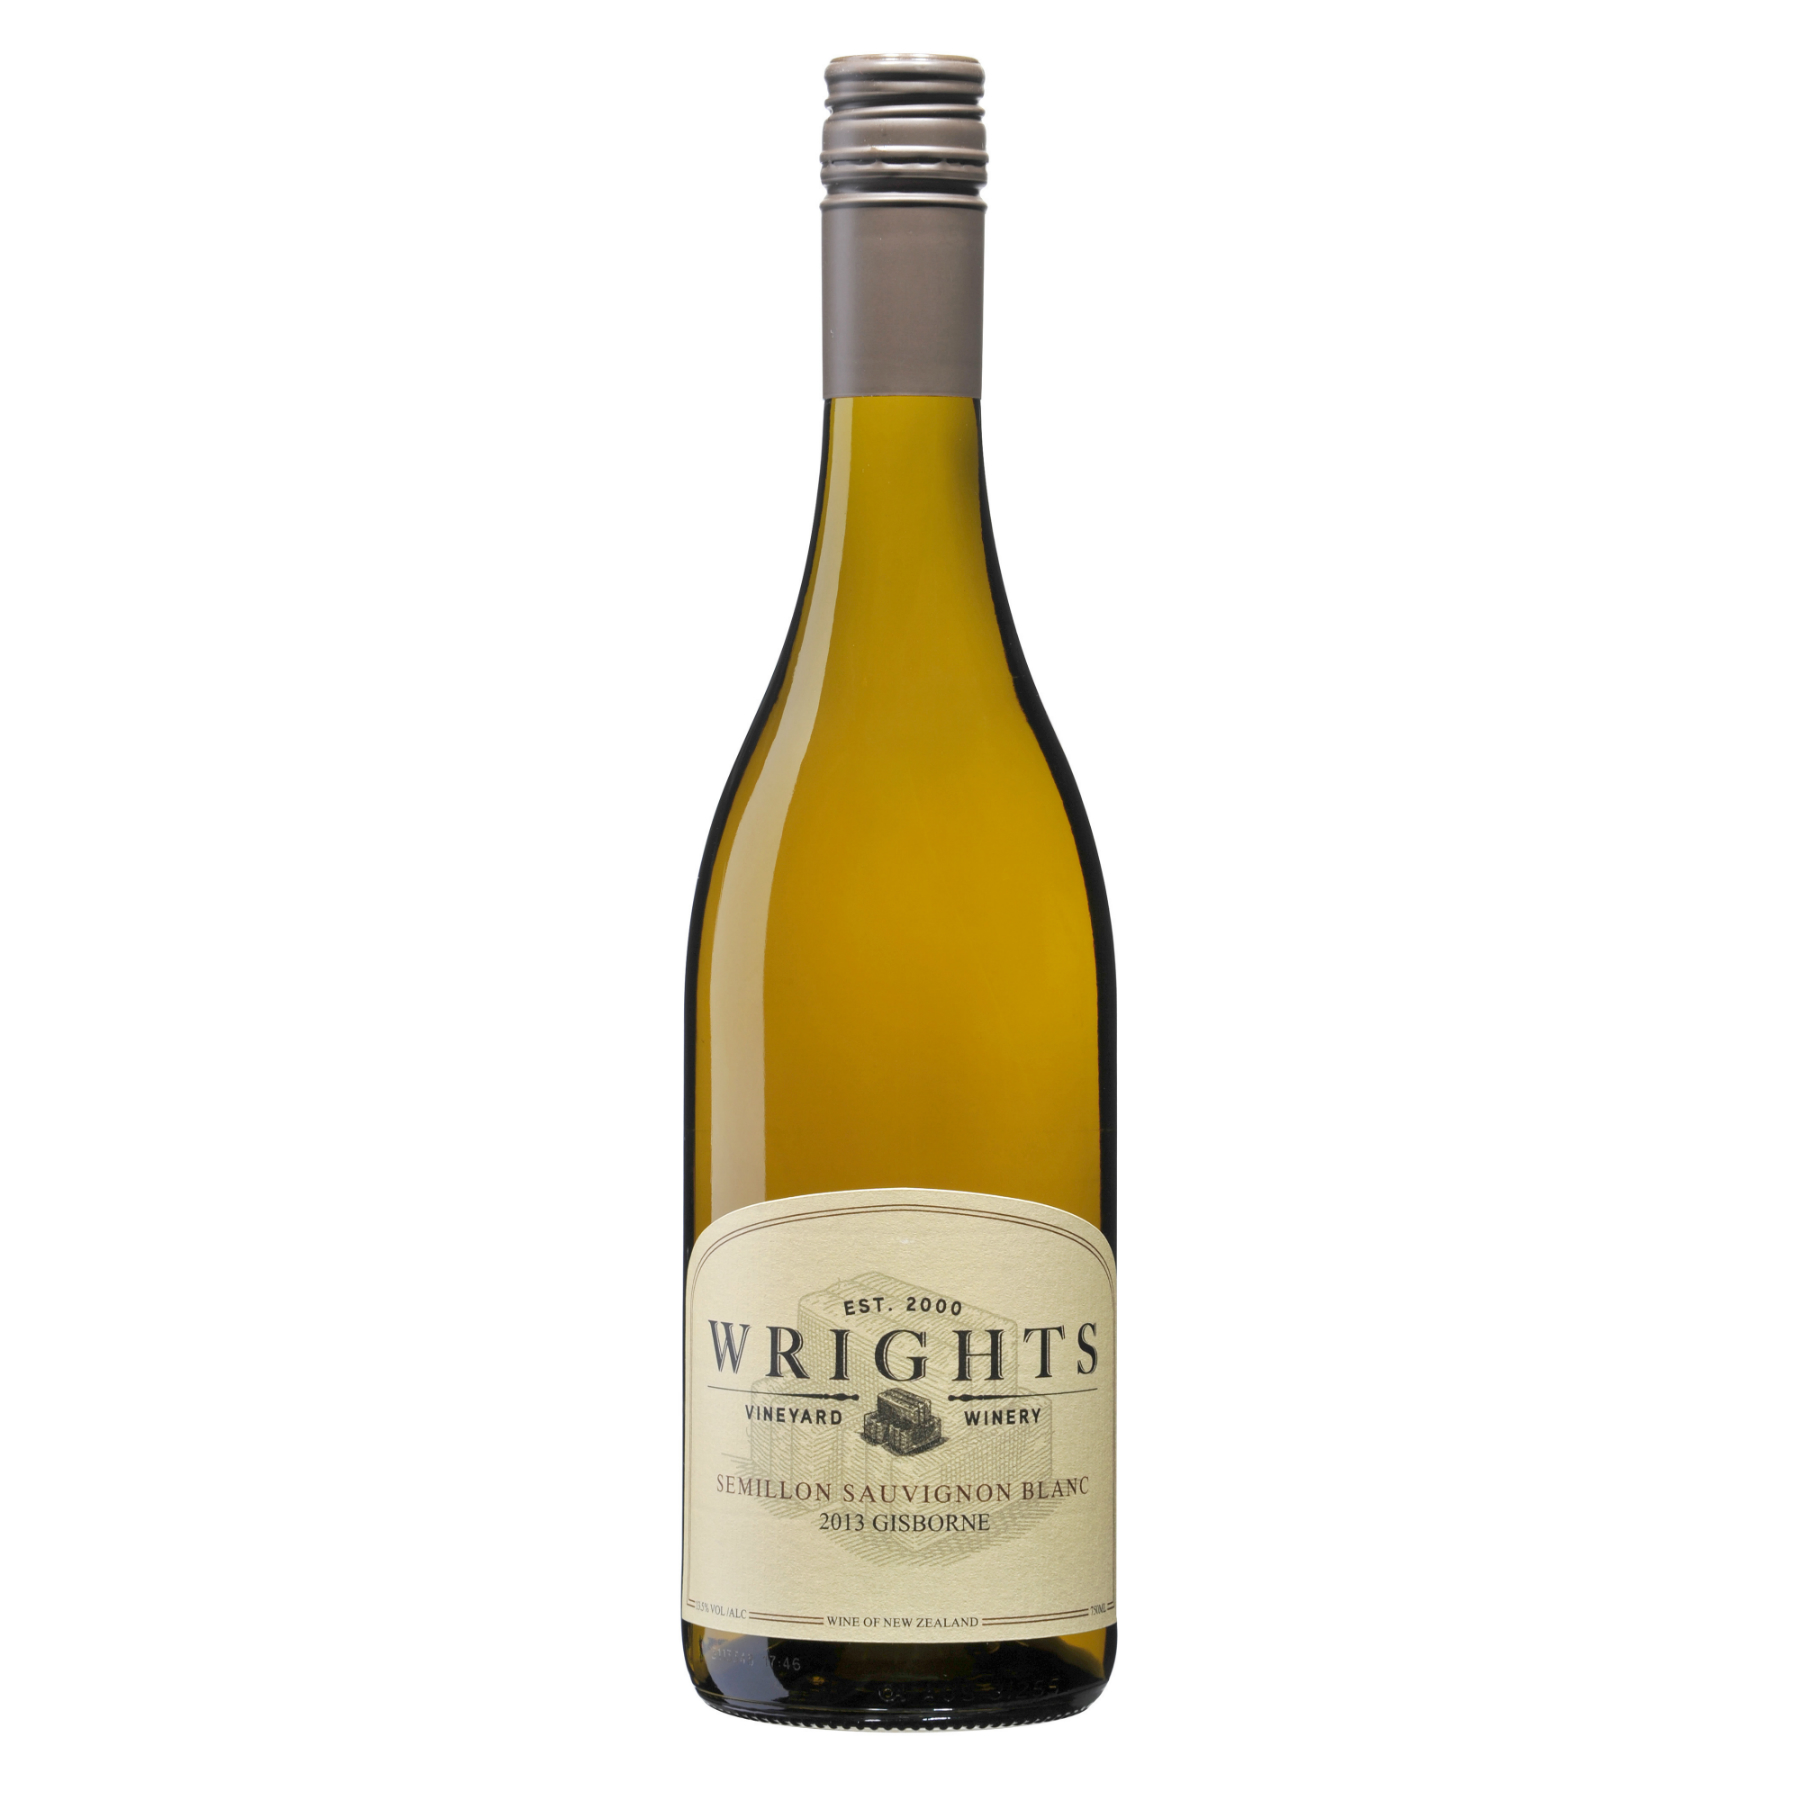 Wrights Semillon Sauvignon Blanc 2013